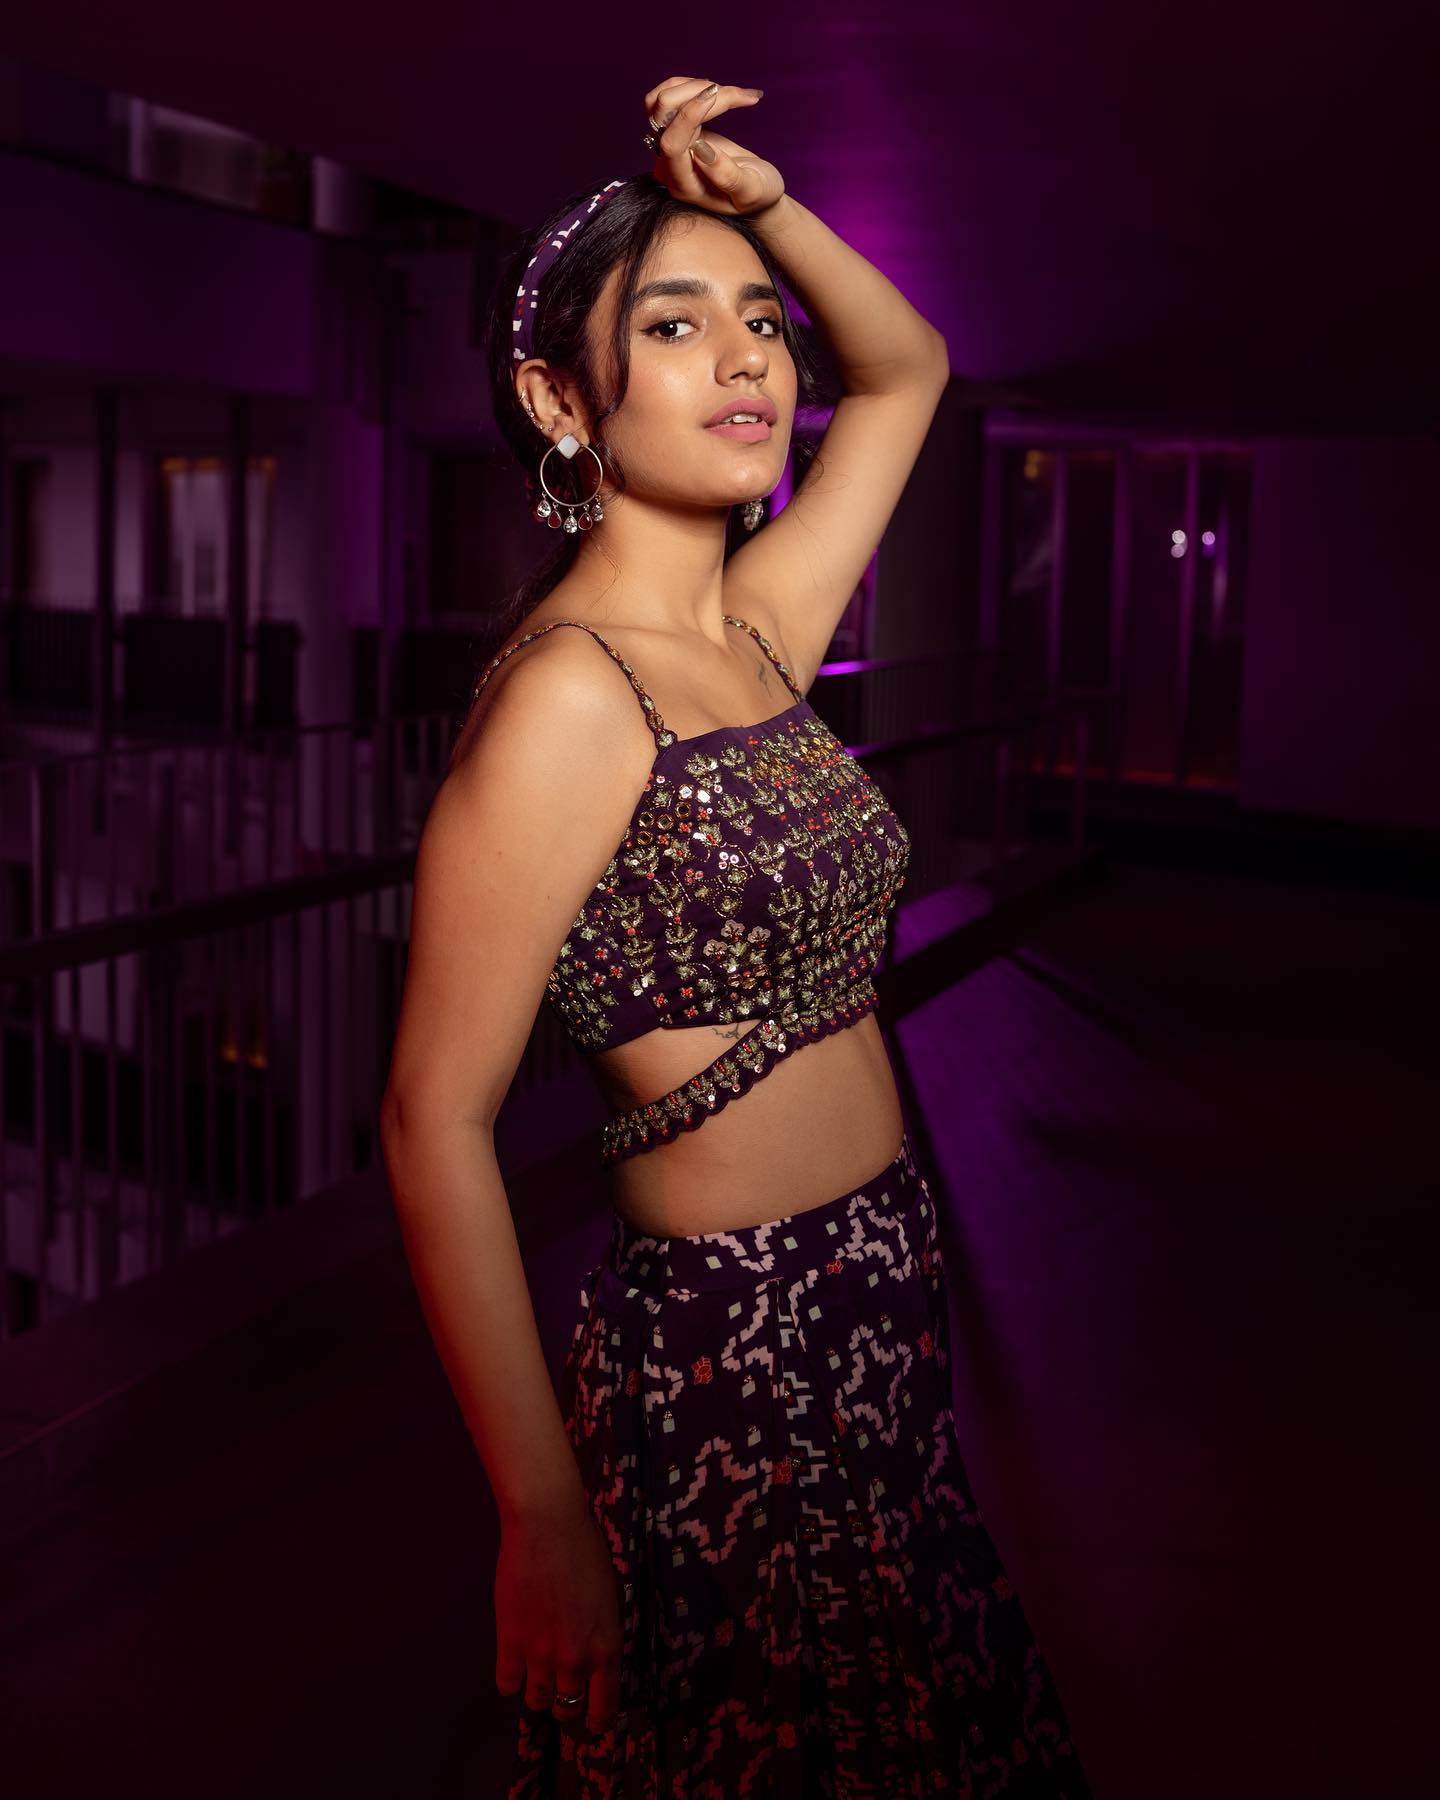  நடிகை ப்ரியா வாரியர் ( Image : Instagram @priya.p.varrier)